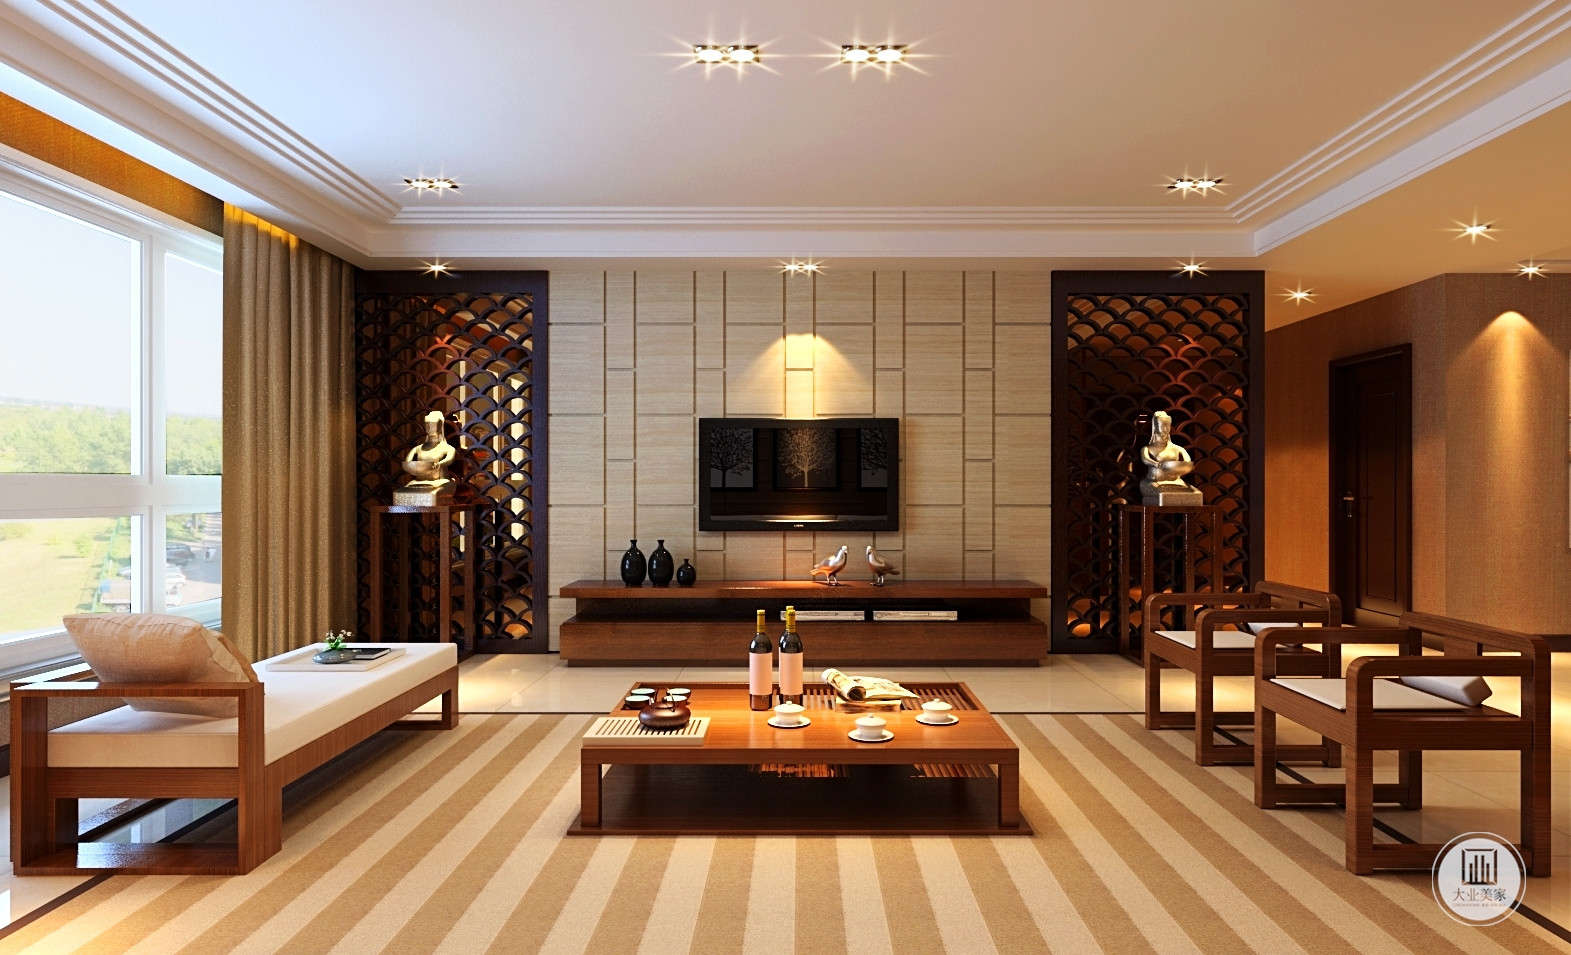 客厅是传统的陈设，沙发是木质加布艺的搭配，罗汉床让整体空间更加的休闲。